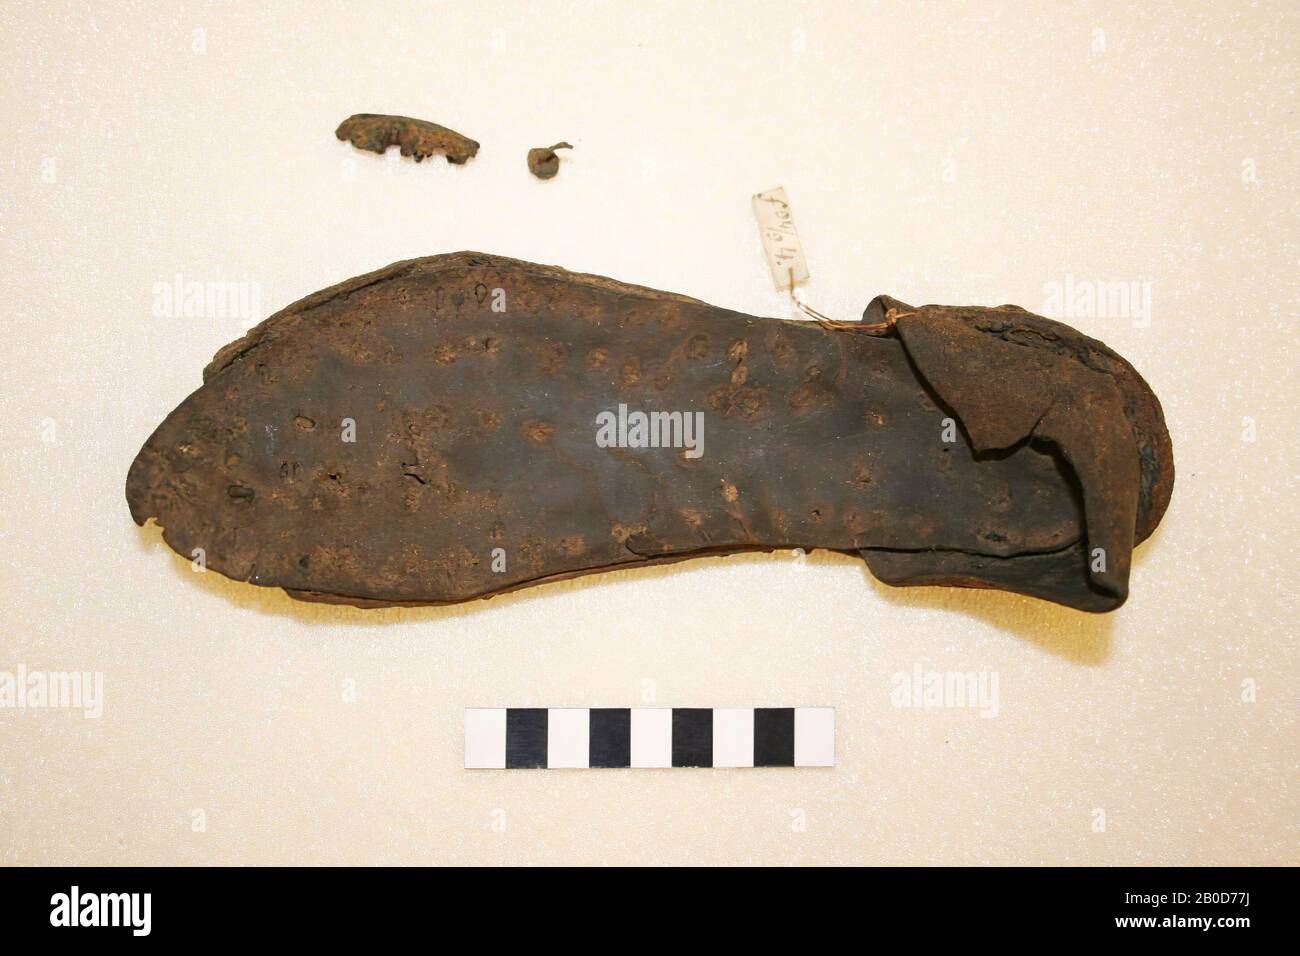 Semelle en cuir de sable droit (chaussure de soldat romain) avec talon  vertical (hachoir). Clouté avec clous de fer. 1 clou en vrac inclus.,  Santal, bio, cuir, métal, fer, l: 22 cm,